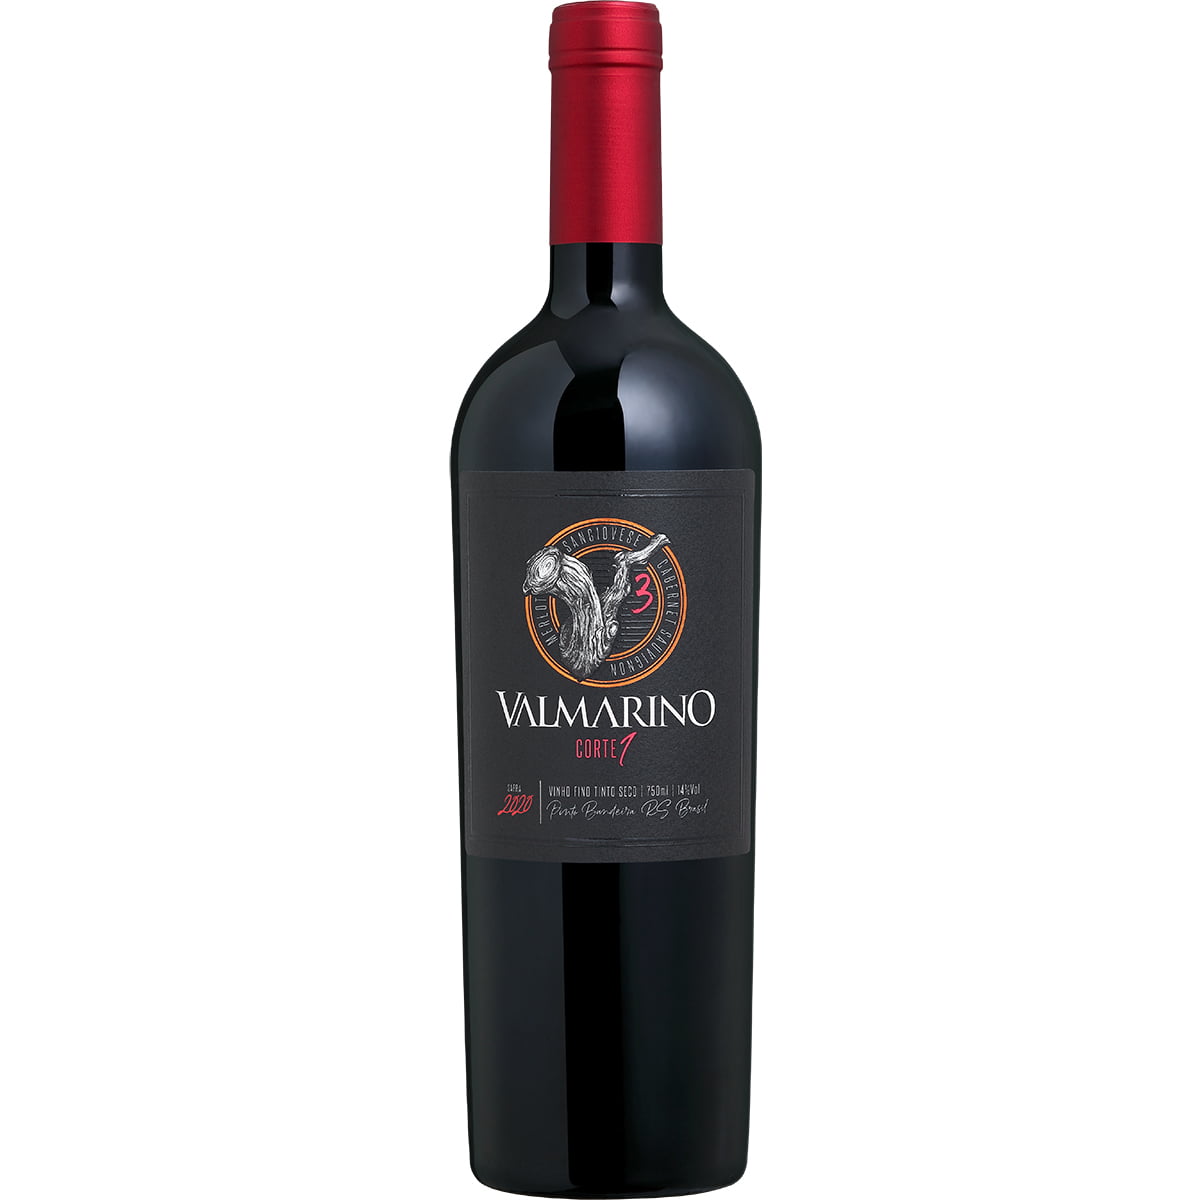 Valmarino V3 Corte 1 Safra 2020 Vinho Tinto Seco 750ml